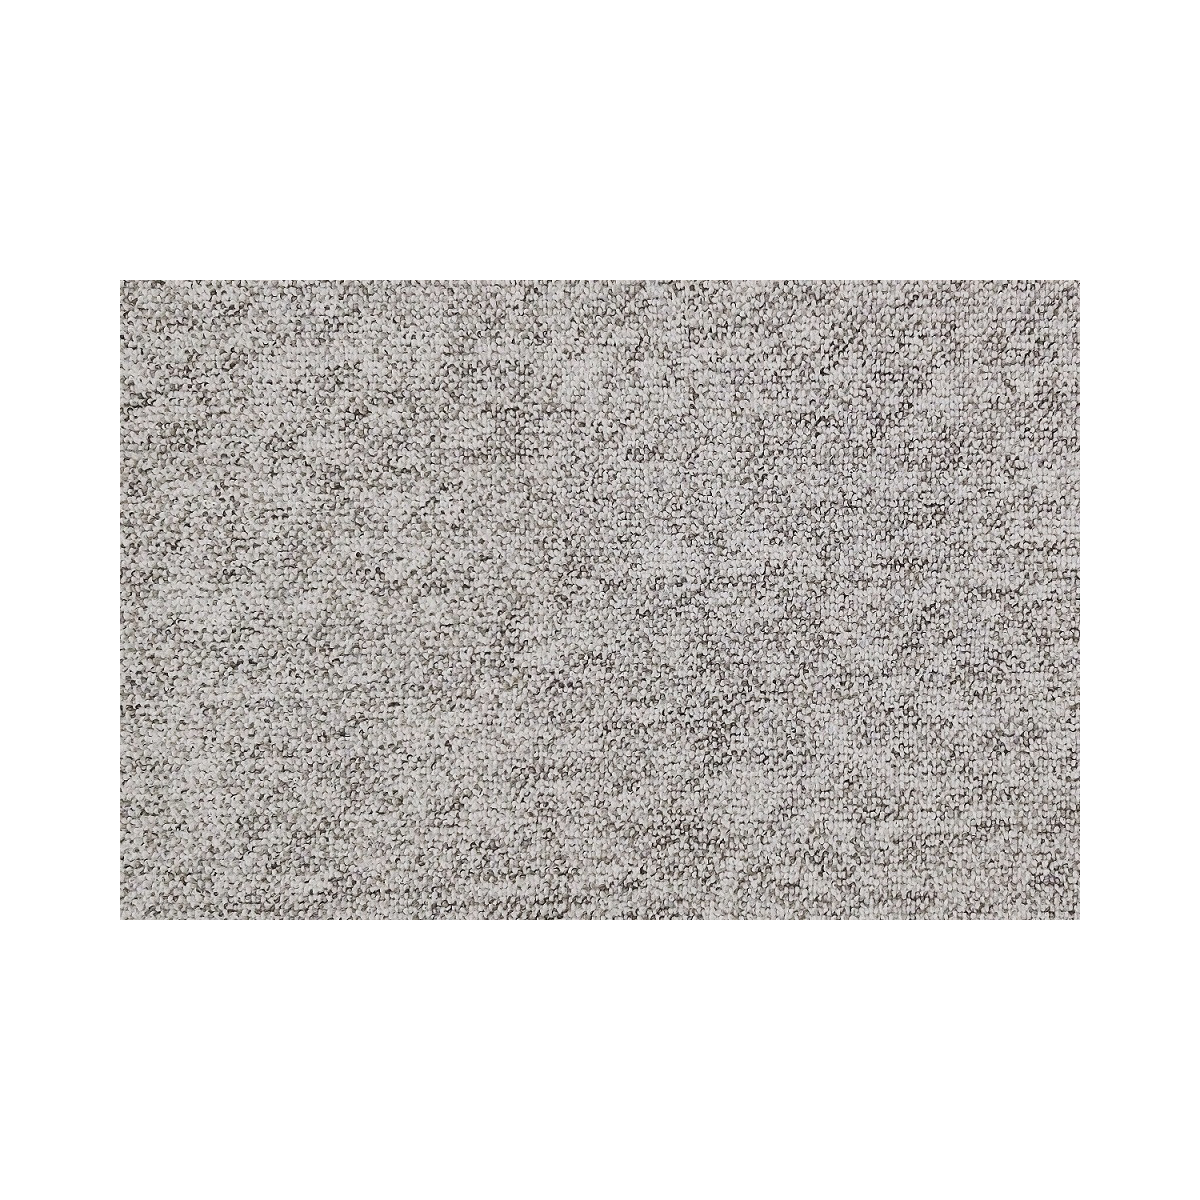 AKCE: 78x490 cm Metrážový koberec Monaco 72 sv.šedý